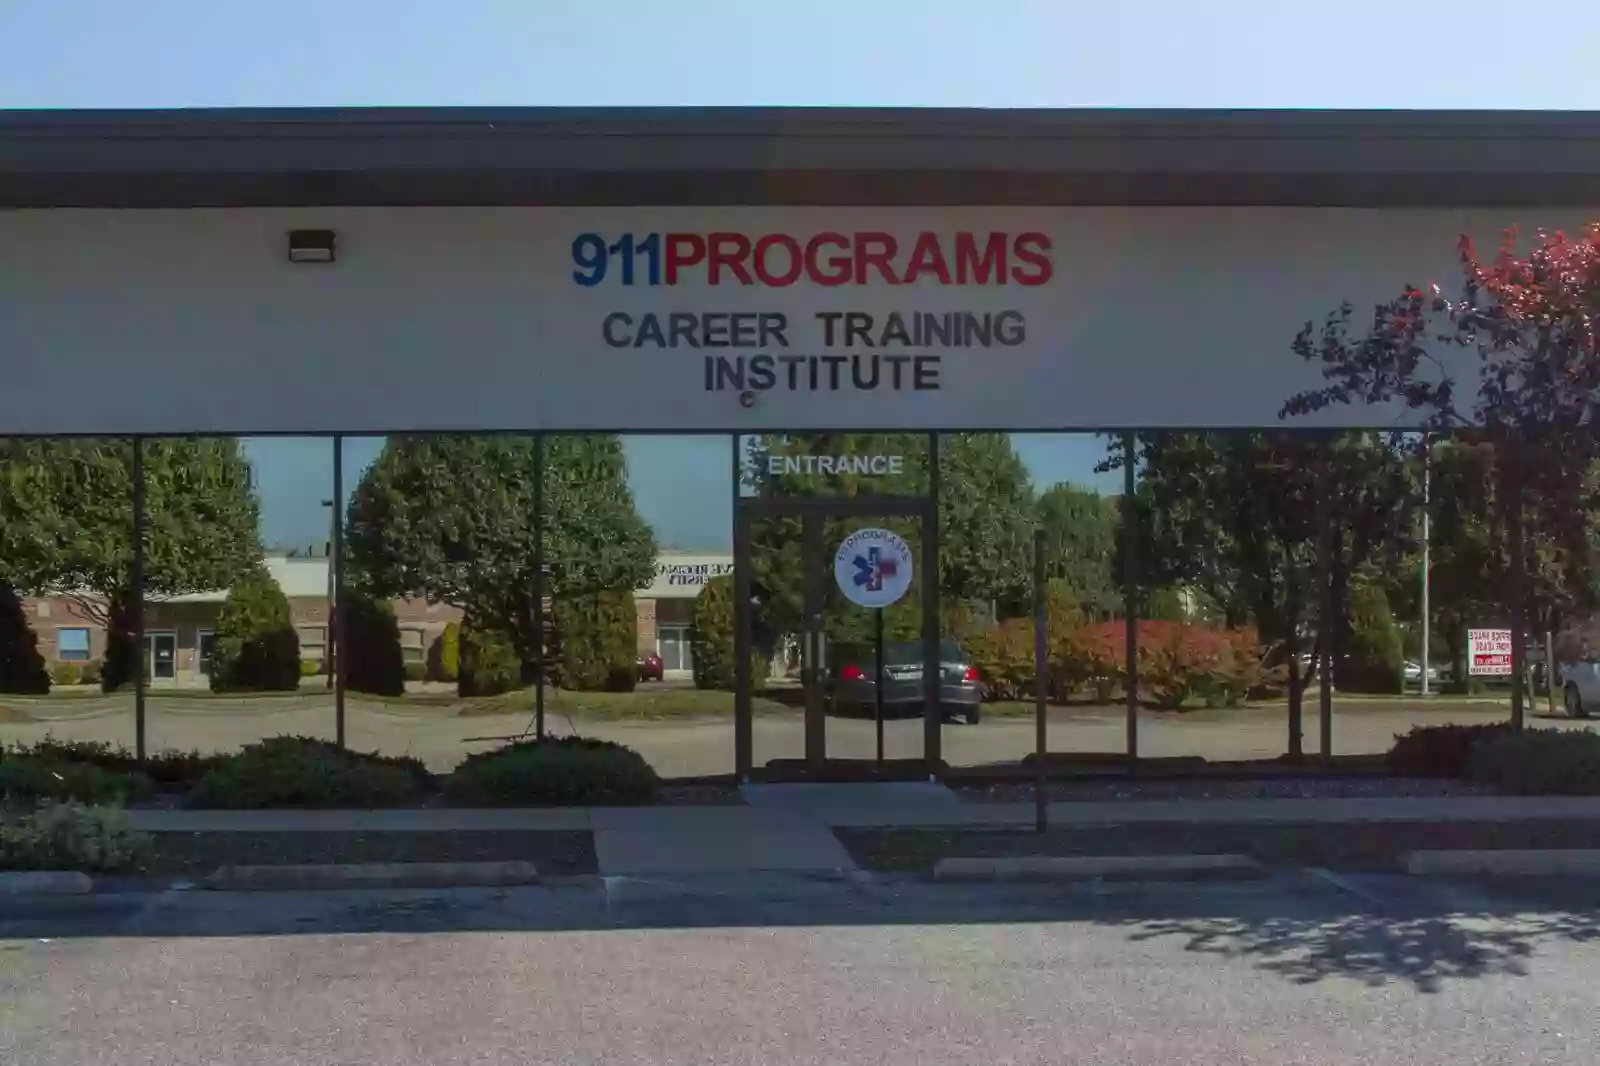 911Programs Career Training Institute